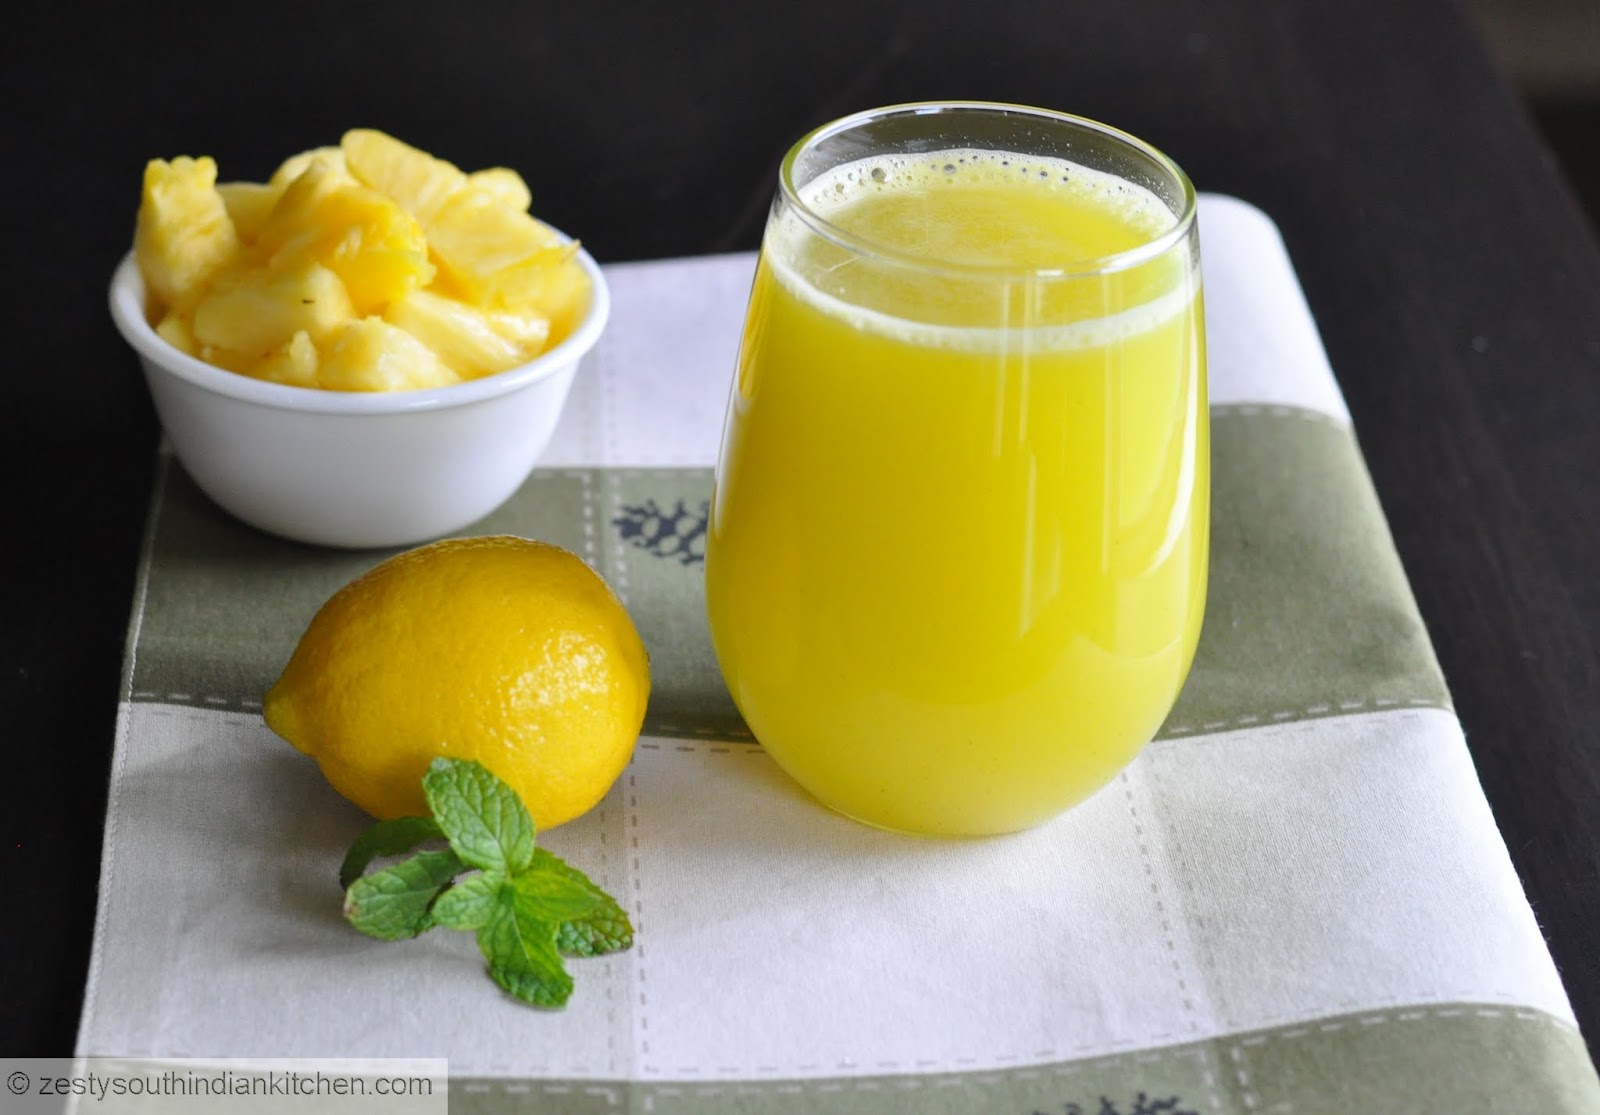 Лимонный сок и печень